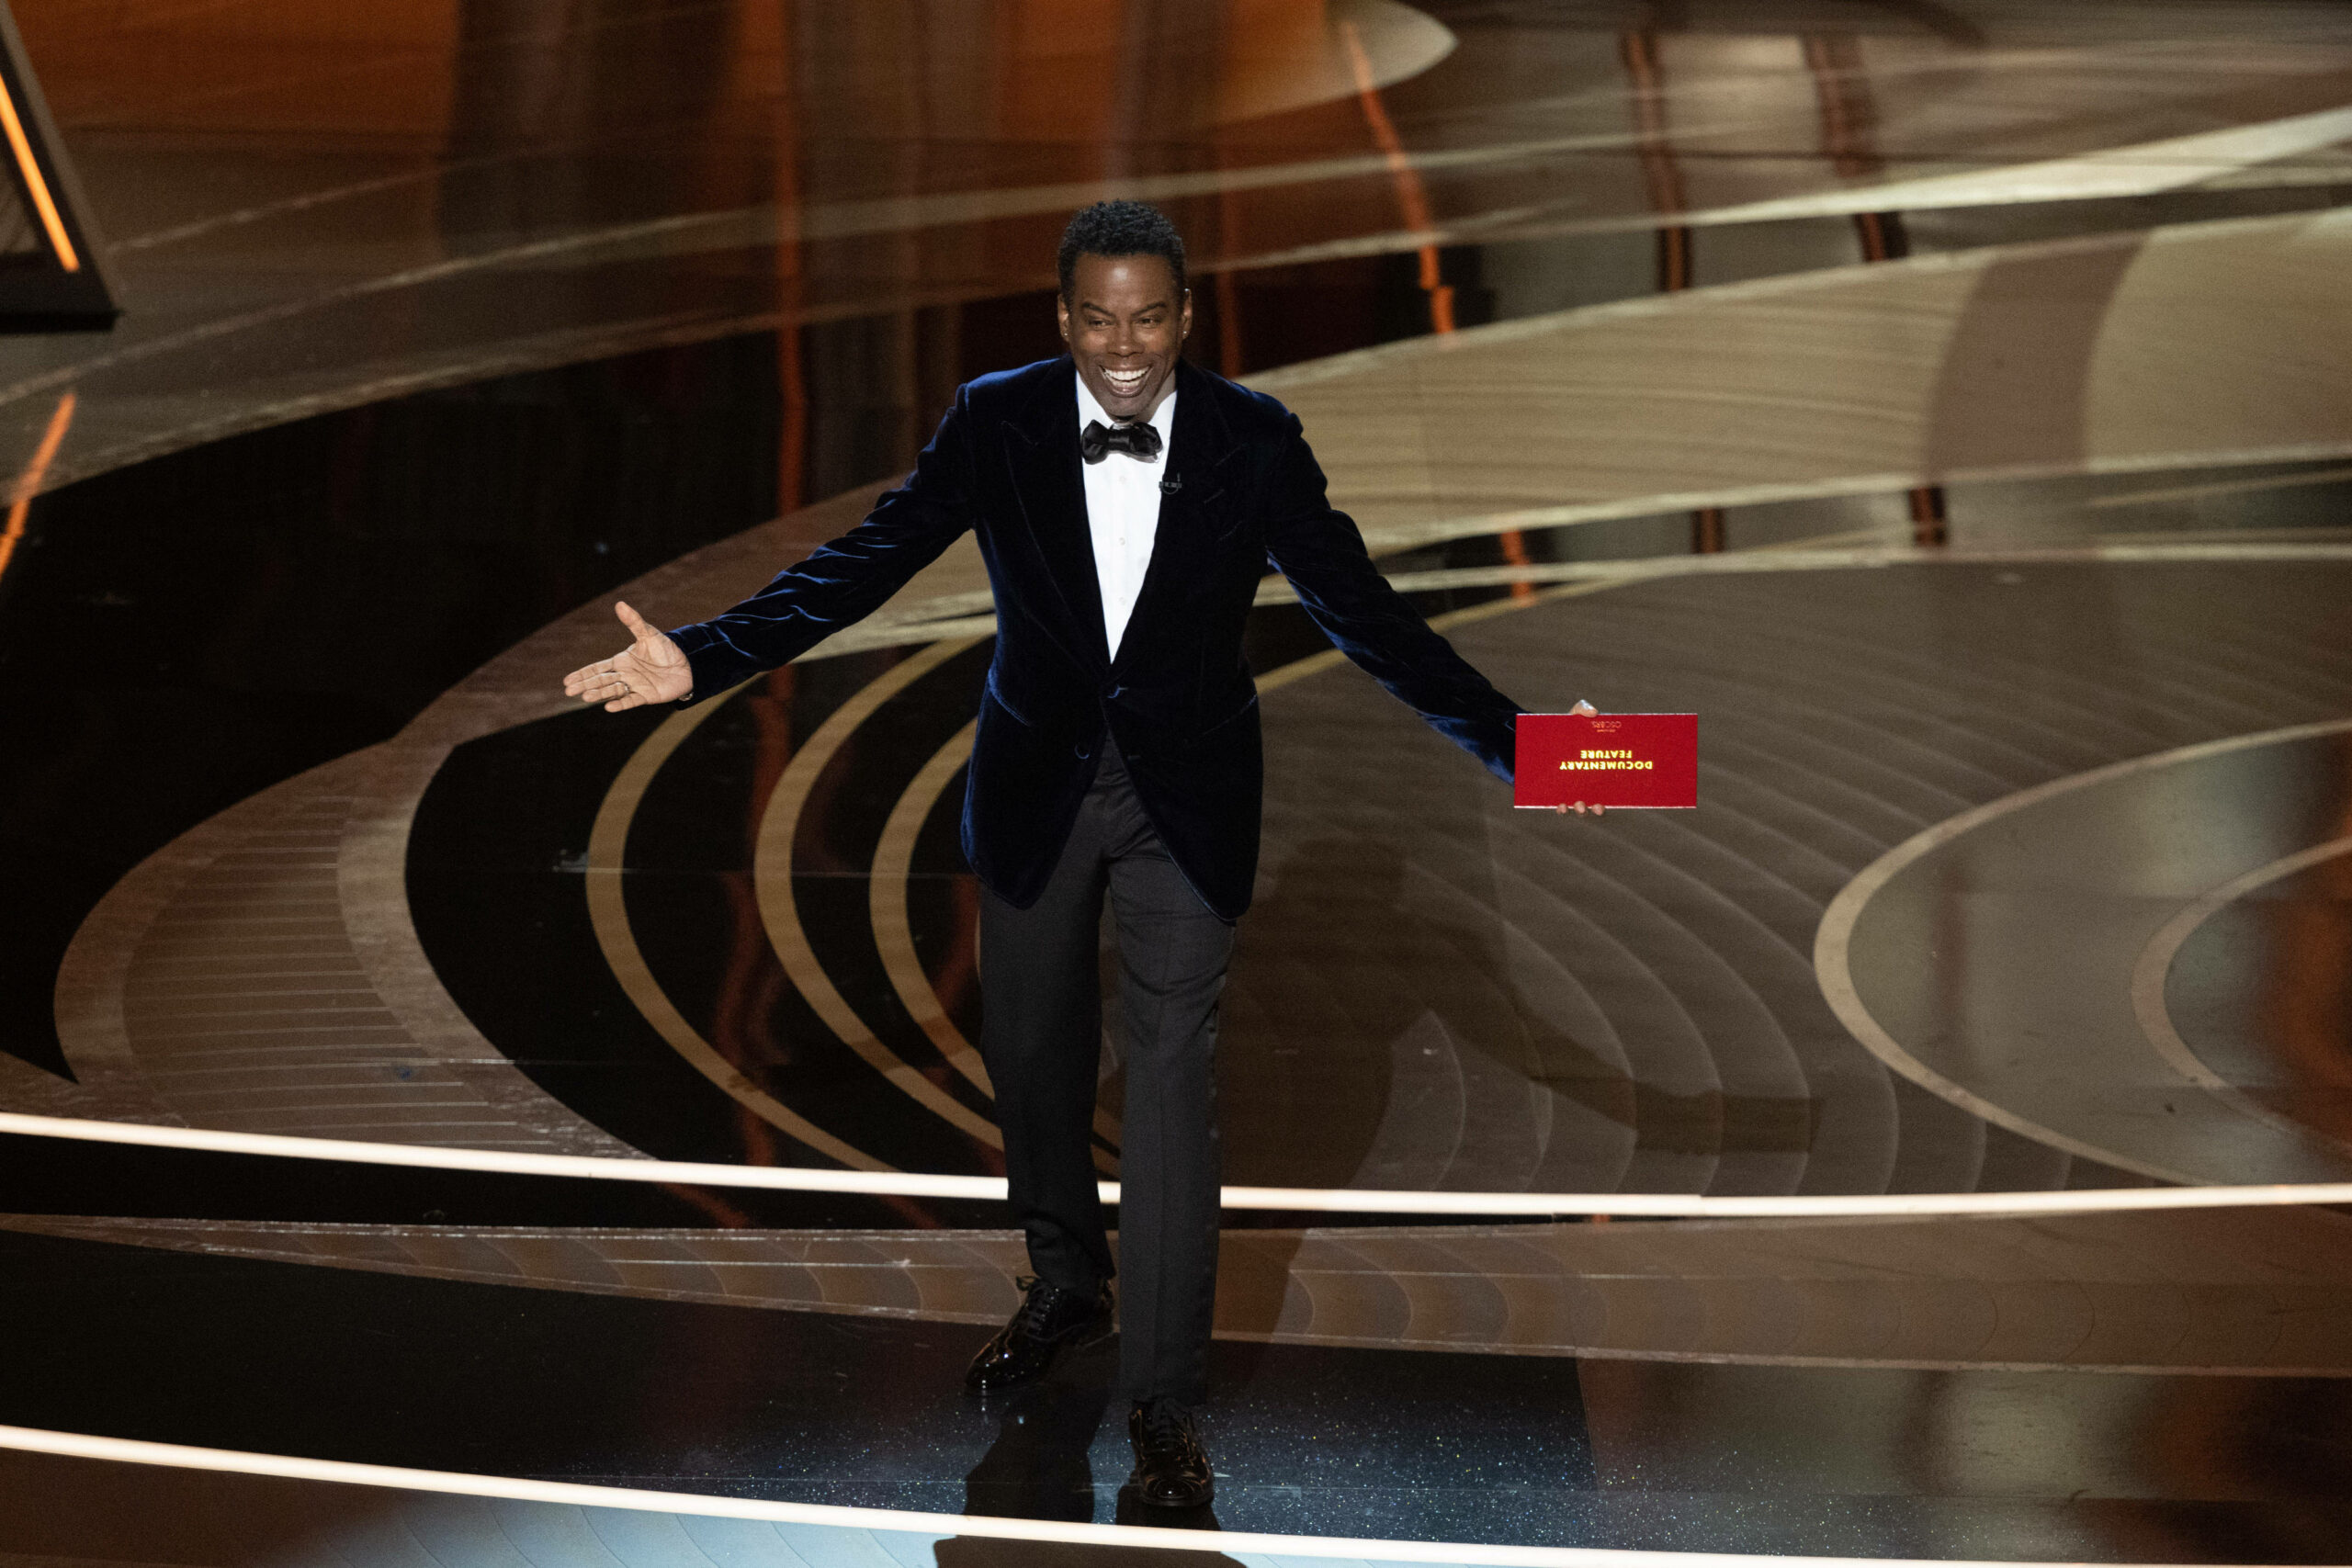 Chris Rock elárulta, miért nem ütött vissza Will Smithnek, amikor az lekevert neki egy pofont az Oscar-gálán